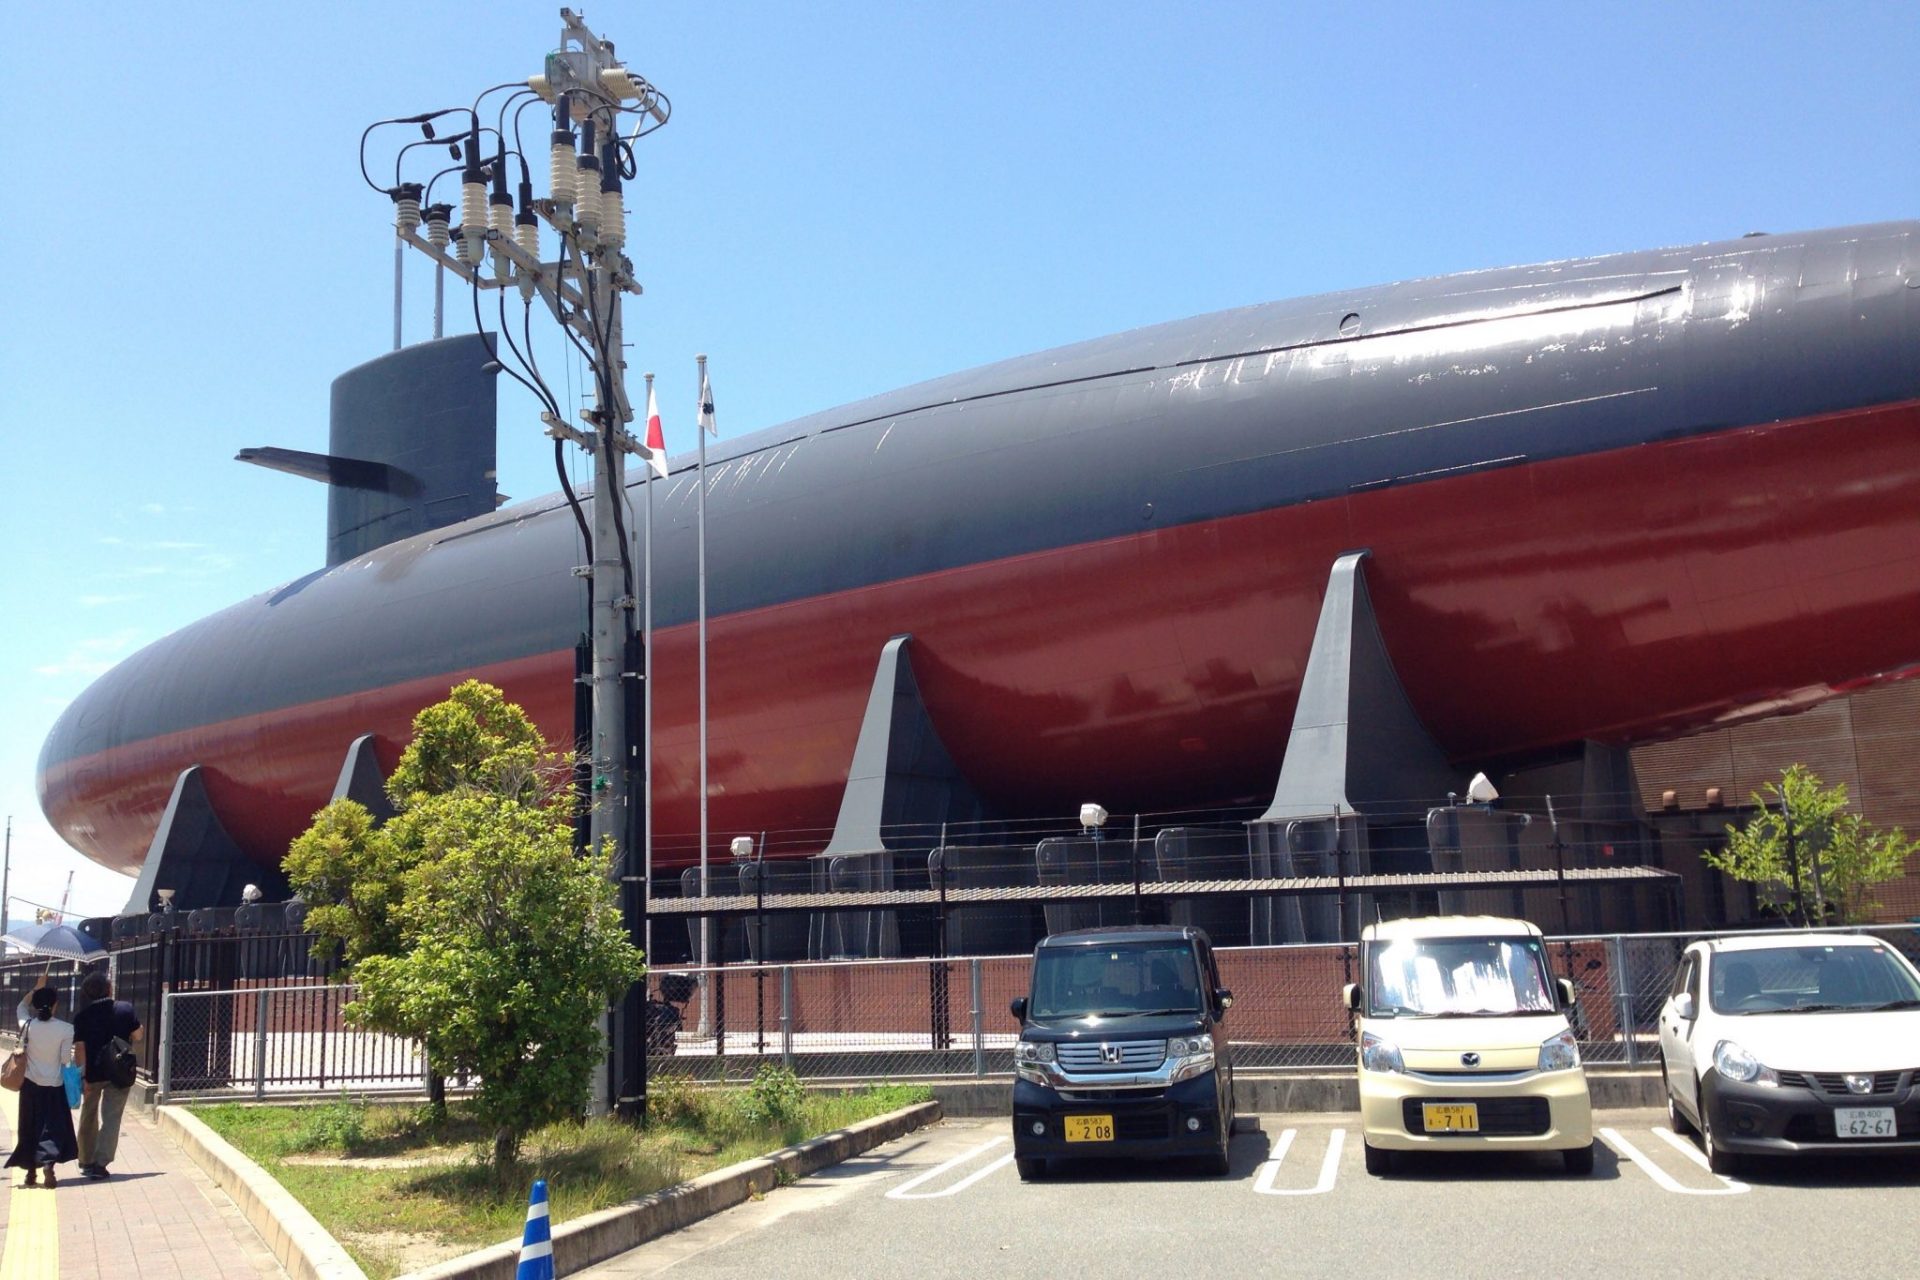 S 広島県呉市てつのくじら館の潜水艦は本物 半端ない迫力に圧倒 でなおし